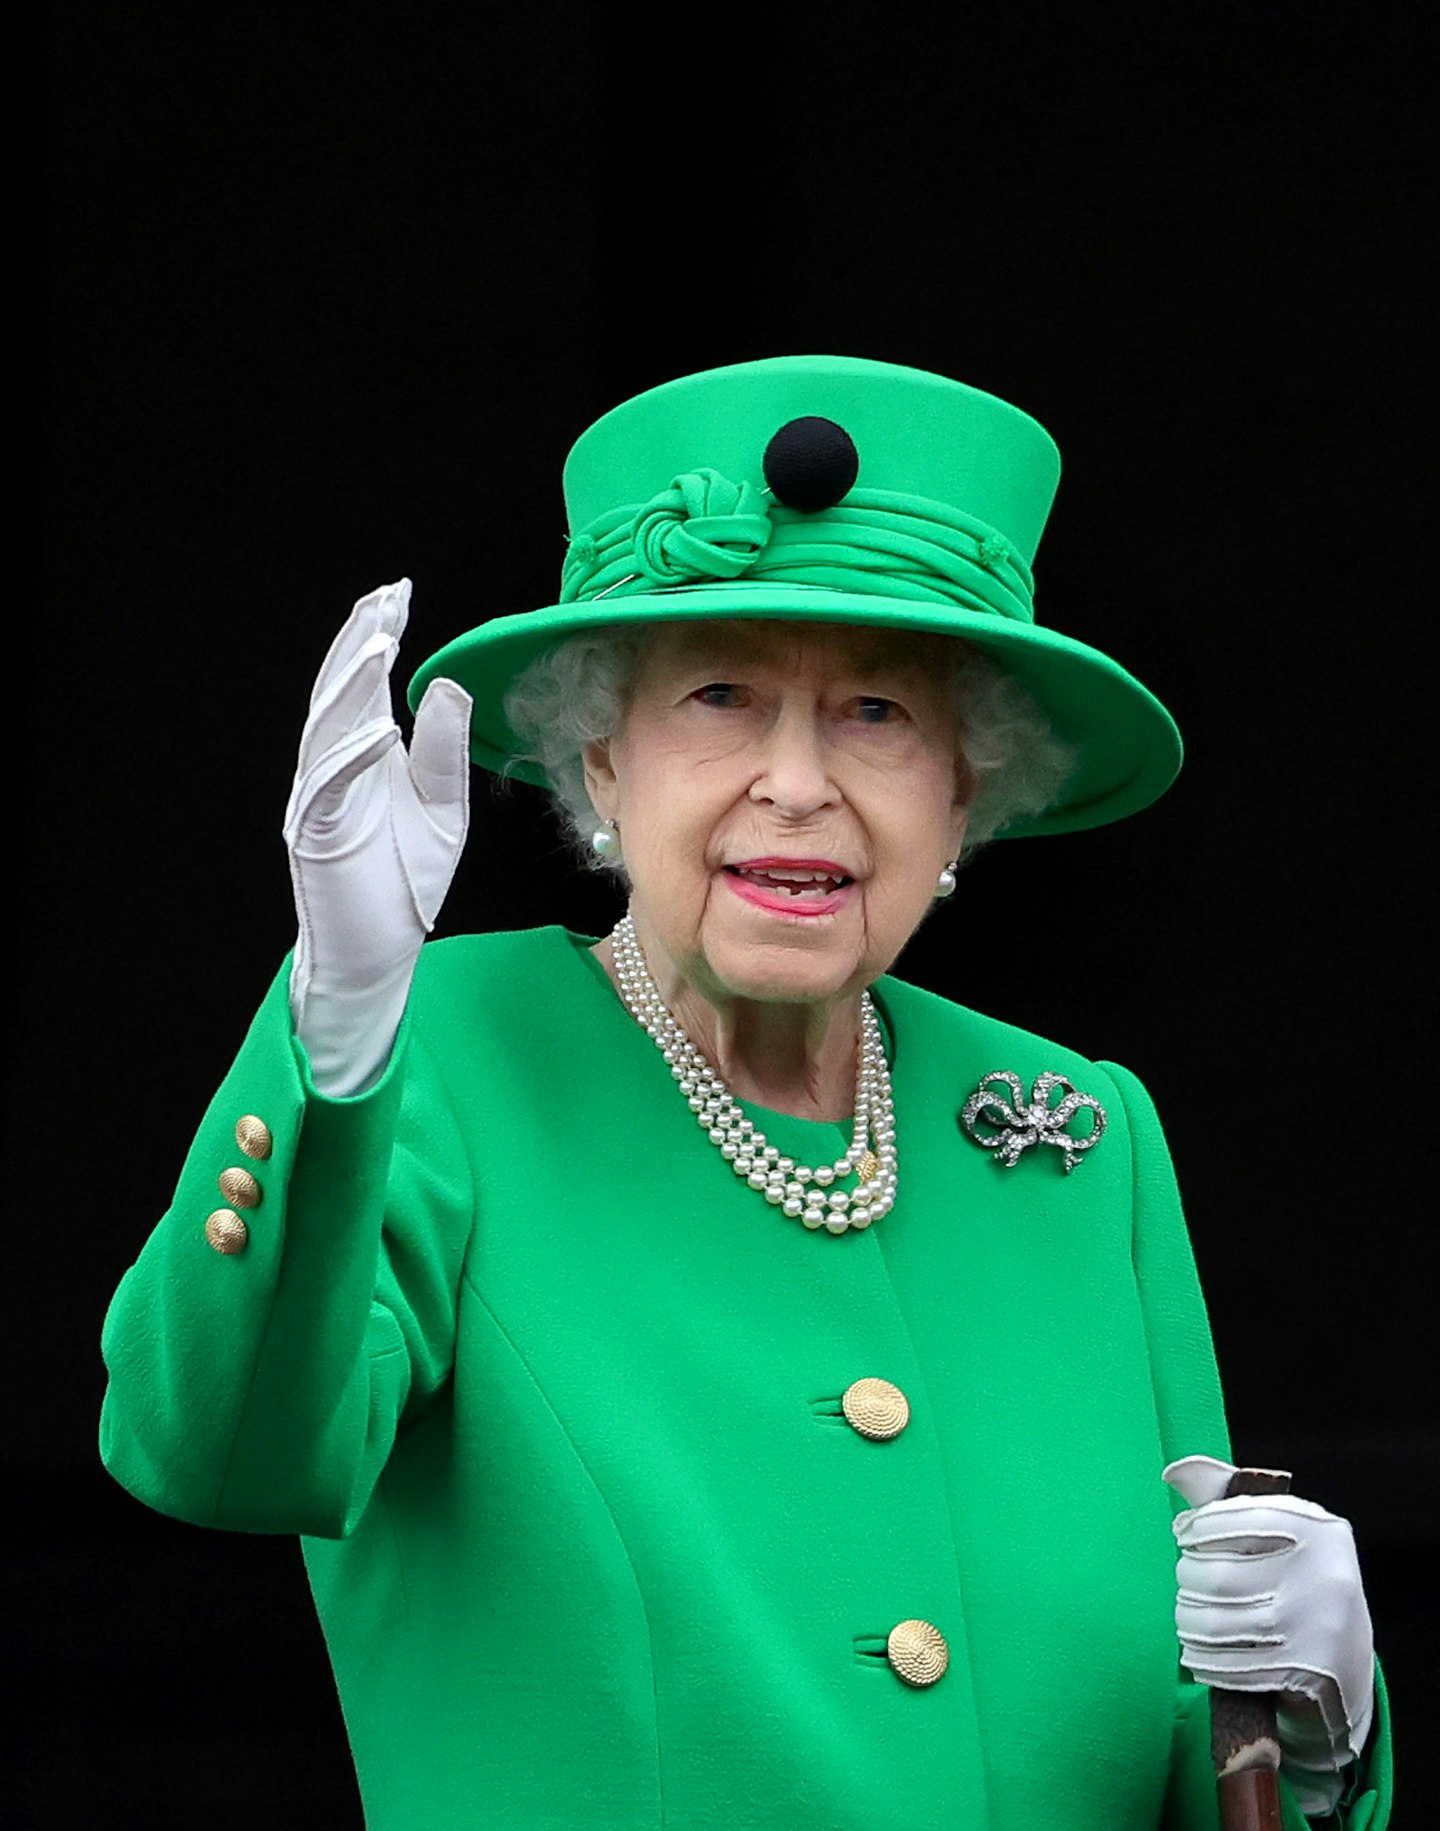 The Queen in Kermit green